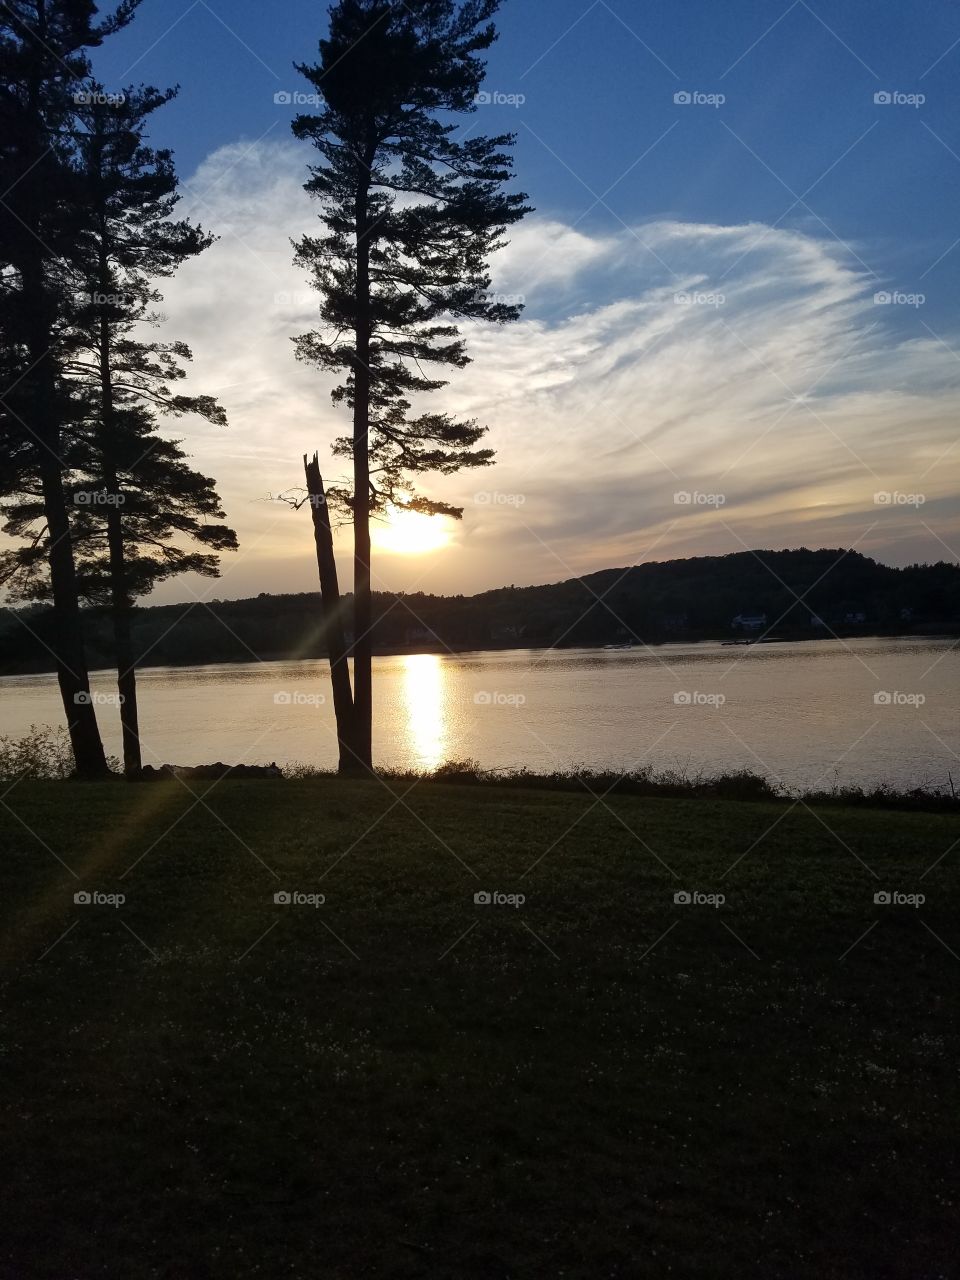 Setting Sun on Lake